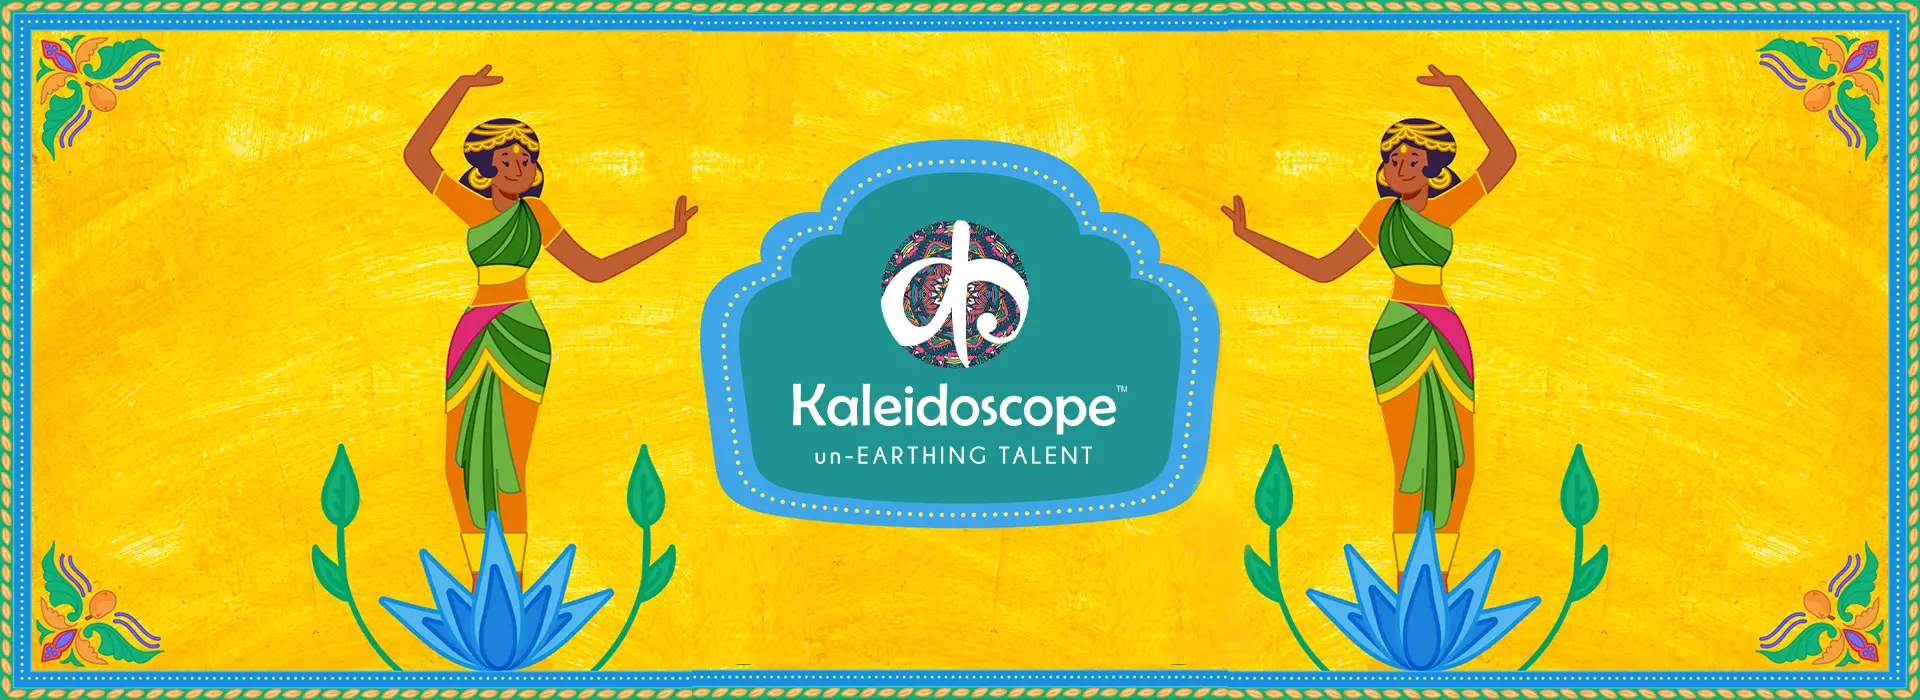 kaleidoscope web banner